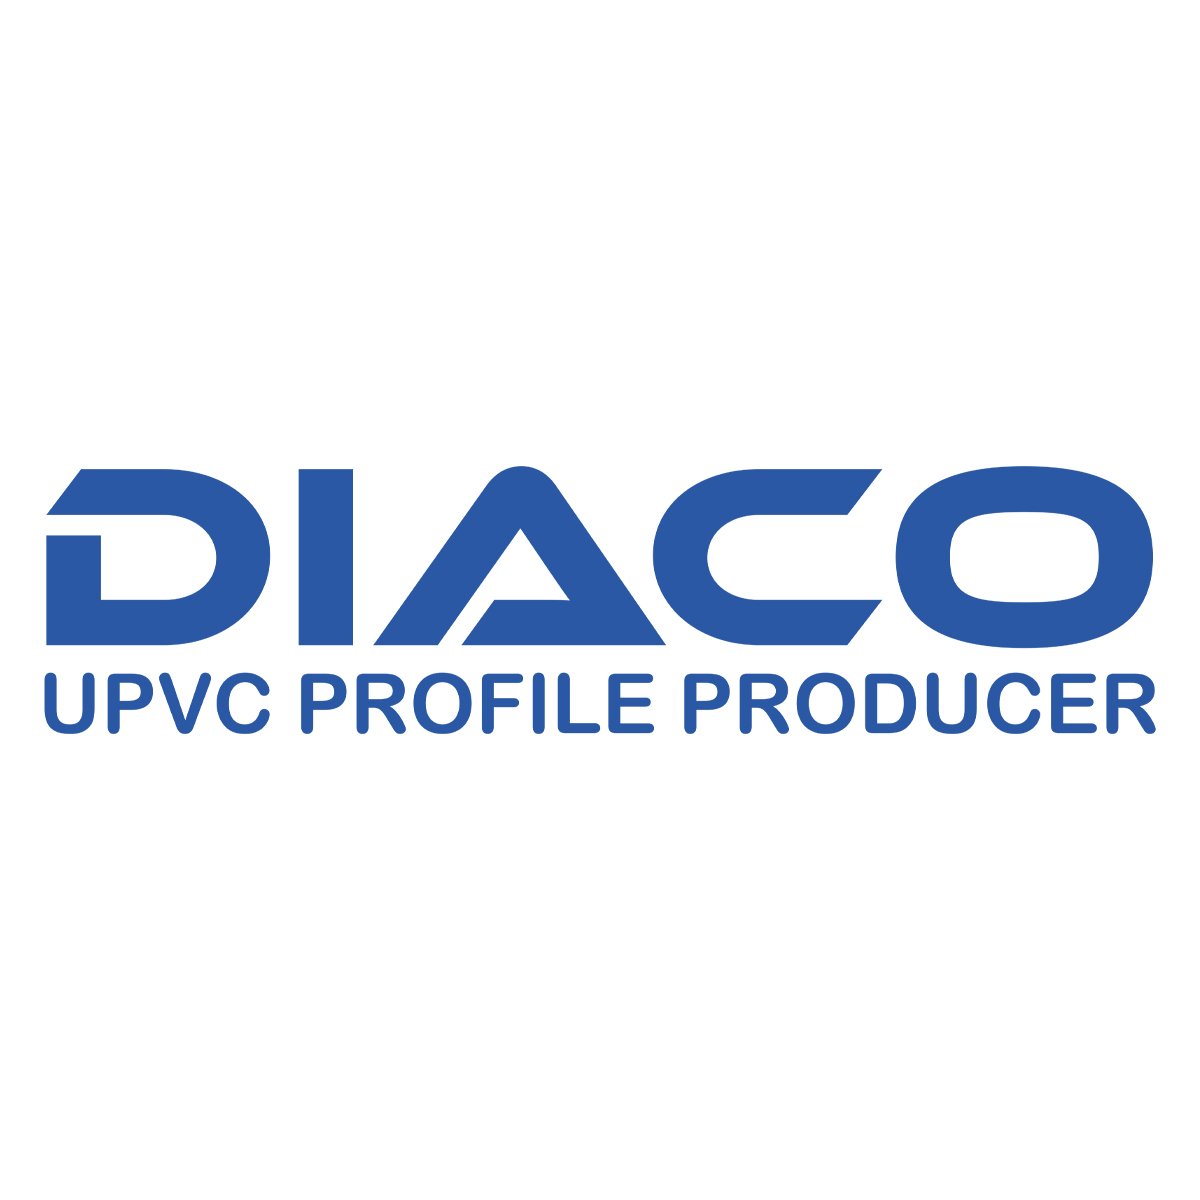 مدیر فروش و بازاریابی | Sales and Marketing Manager - دیاکو پروفیل | Diaco Profile